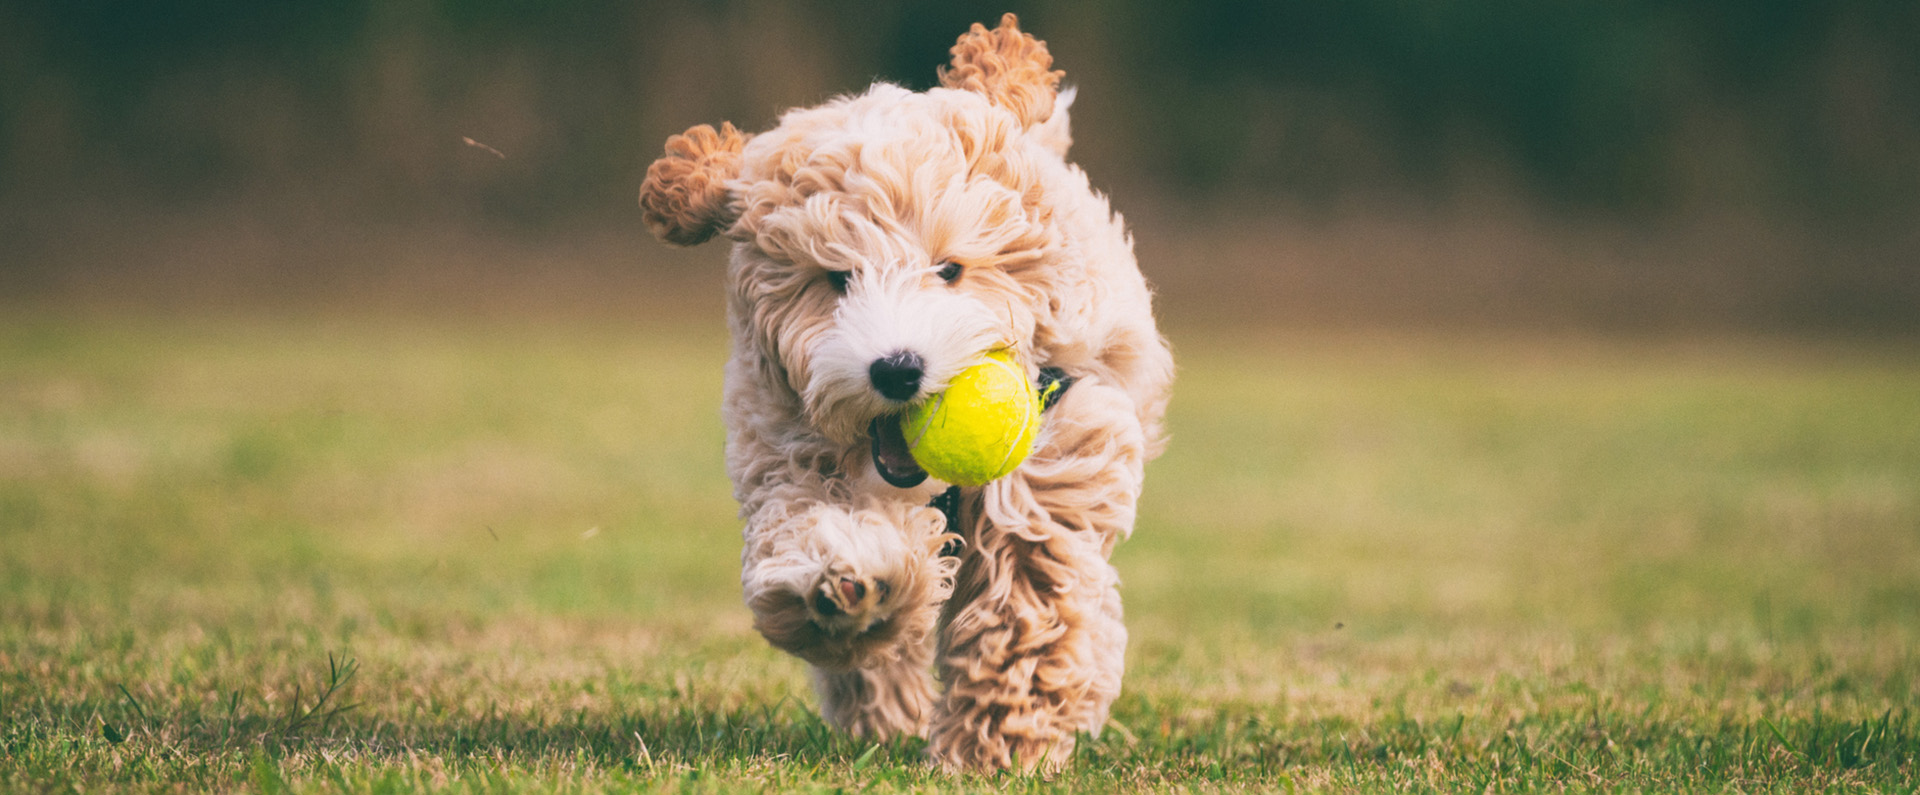 Puppy running carrying a tennis ball 